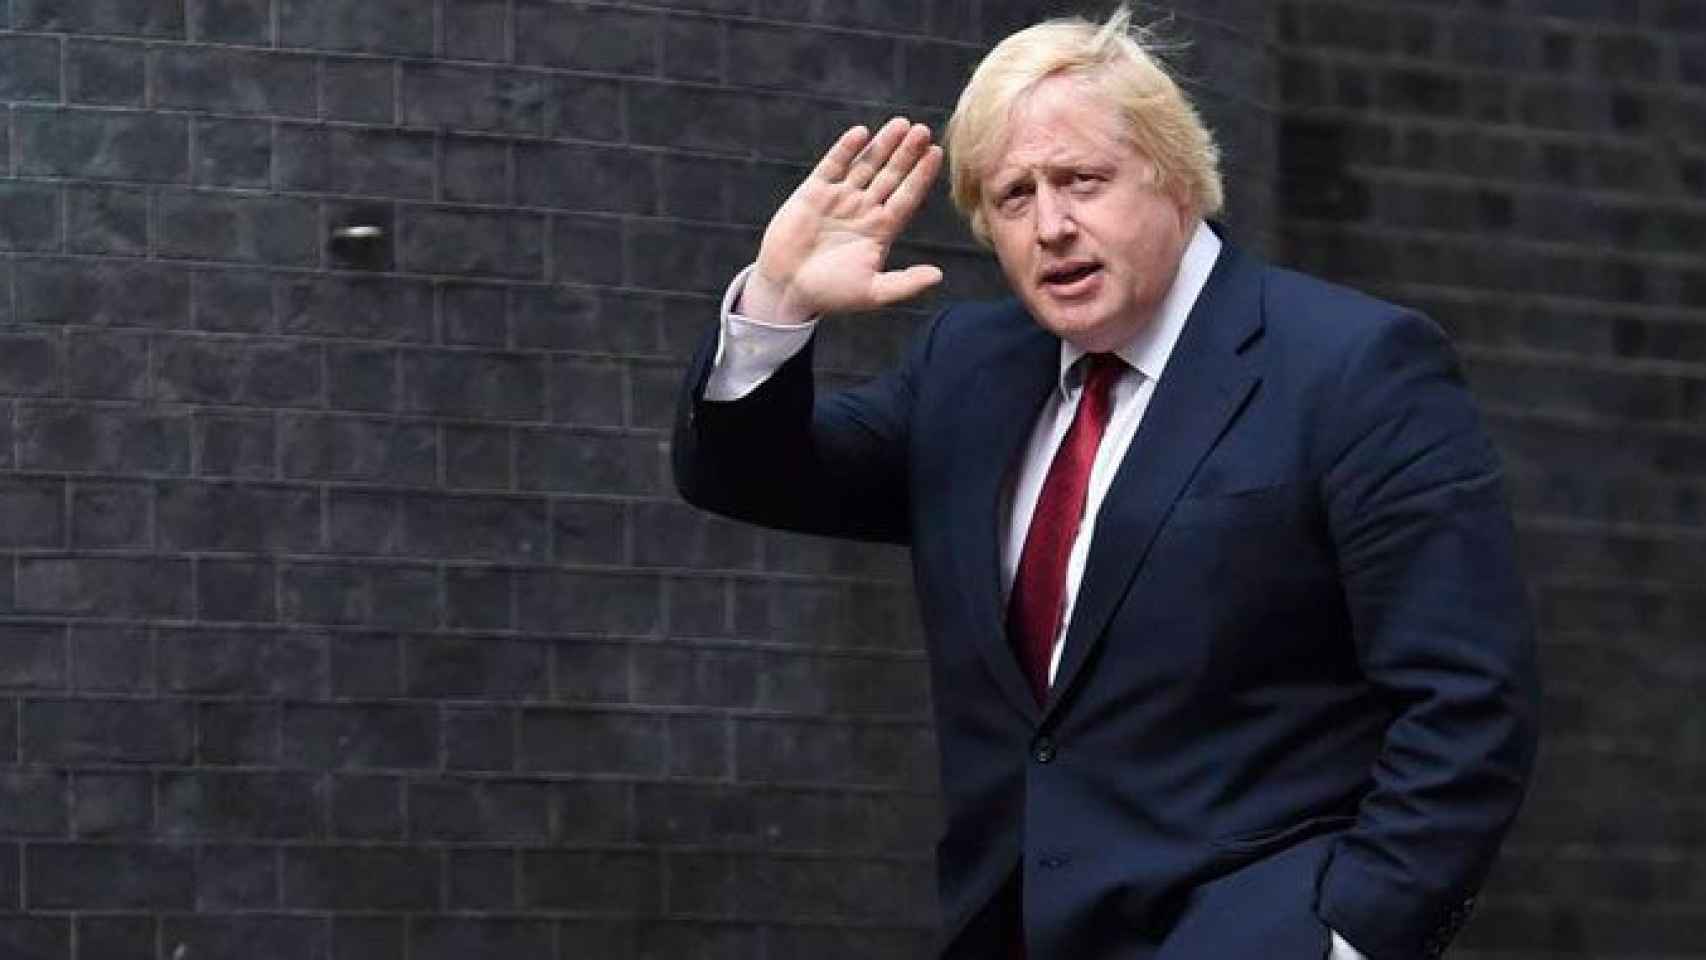 El Club de los Presidentes subastaba un almuerzo con Boris Johnson, exalcalde de Londres y ministro de Exteriores británico / EFE